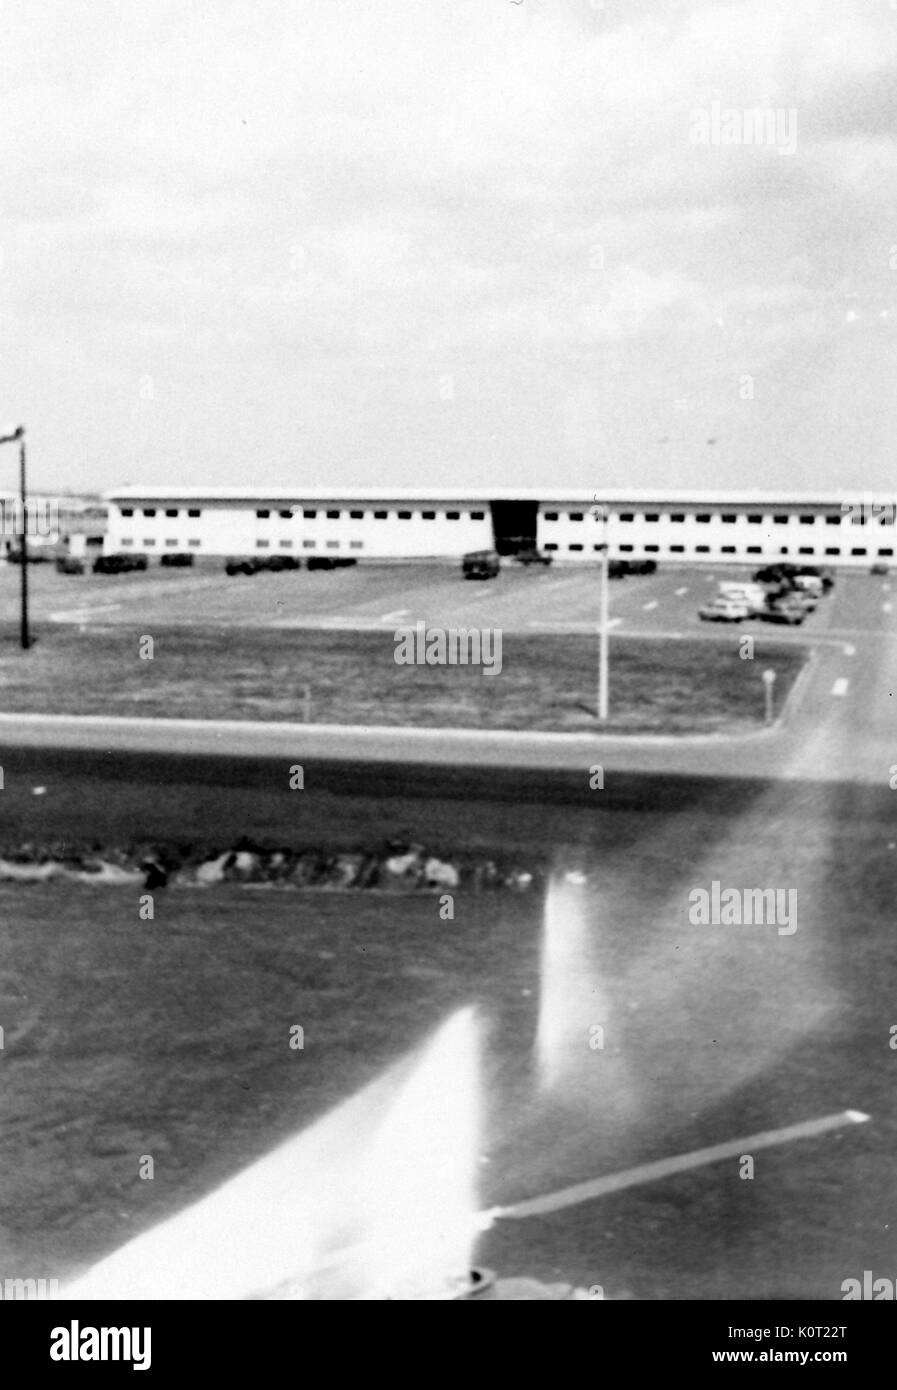 Binh long post, a deux étages bâtiment militaire américaine au Vietnam pendant la guerre du Vietnam, vue extérieure avec certains dommages à la photographie originale, 1964. Banque D'Images